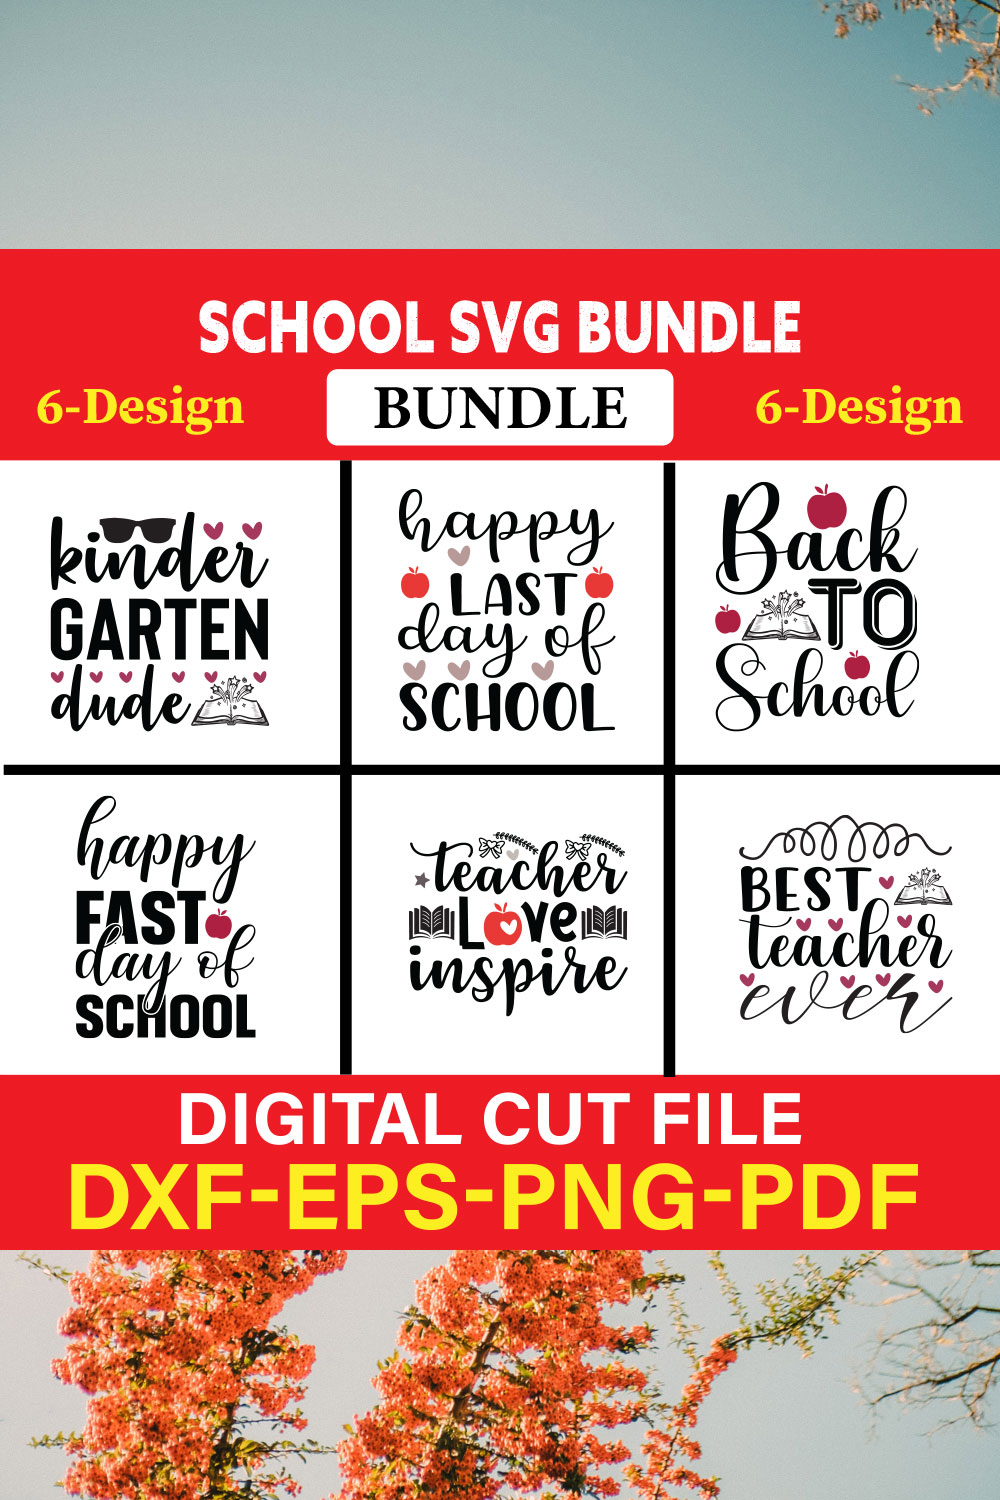 School svg bundle T-shirt Design Bundle Vol-9 pinterest preview image.